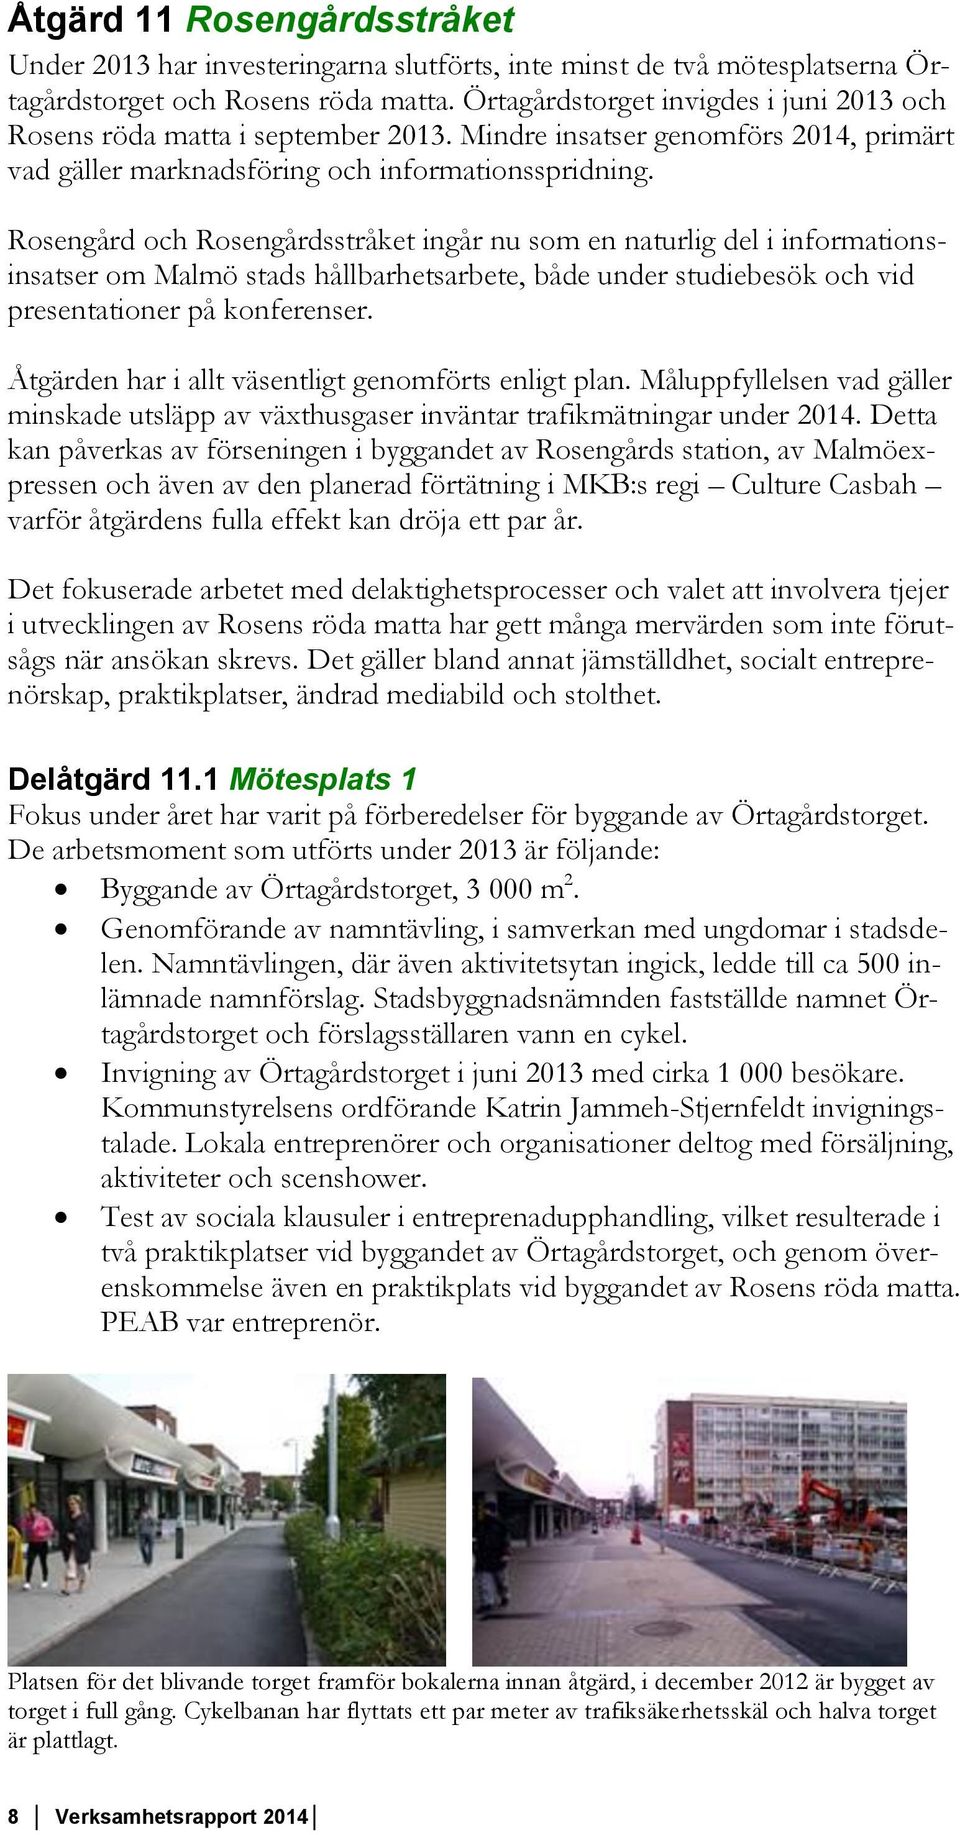 Rosengård och Rosengårdsstråket ingår nu som en naturlig del i informationsinsatser om Malmö stads hållbarhetsarbete, både under studiebesök och vid presentationer på konferenser.